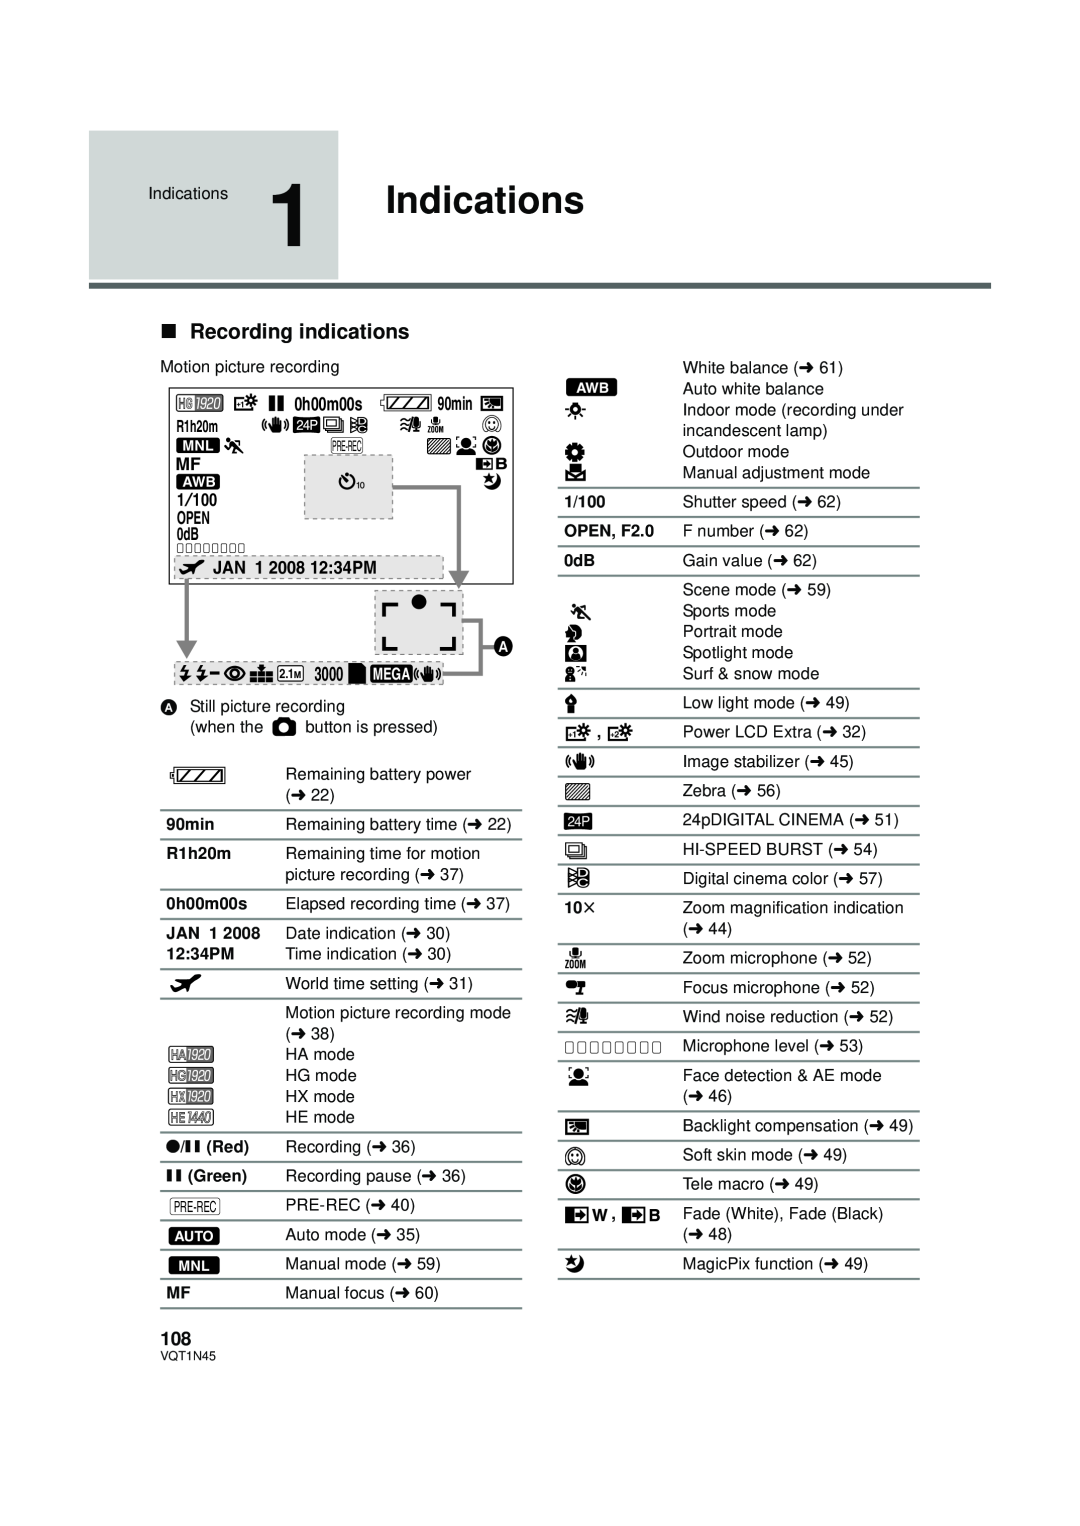 Panasonic HDC-SD9PC manual ∫Recording indications, 0h00m00s, 2.1Ｍ 3000 MEGA, 90min, R1h20m, JAN 1, 12:34PM, 1/100 